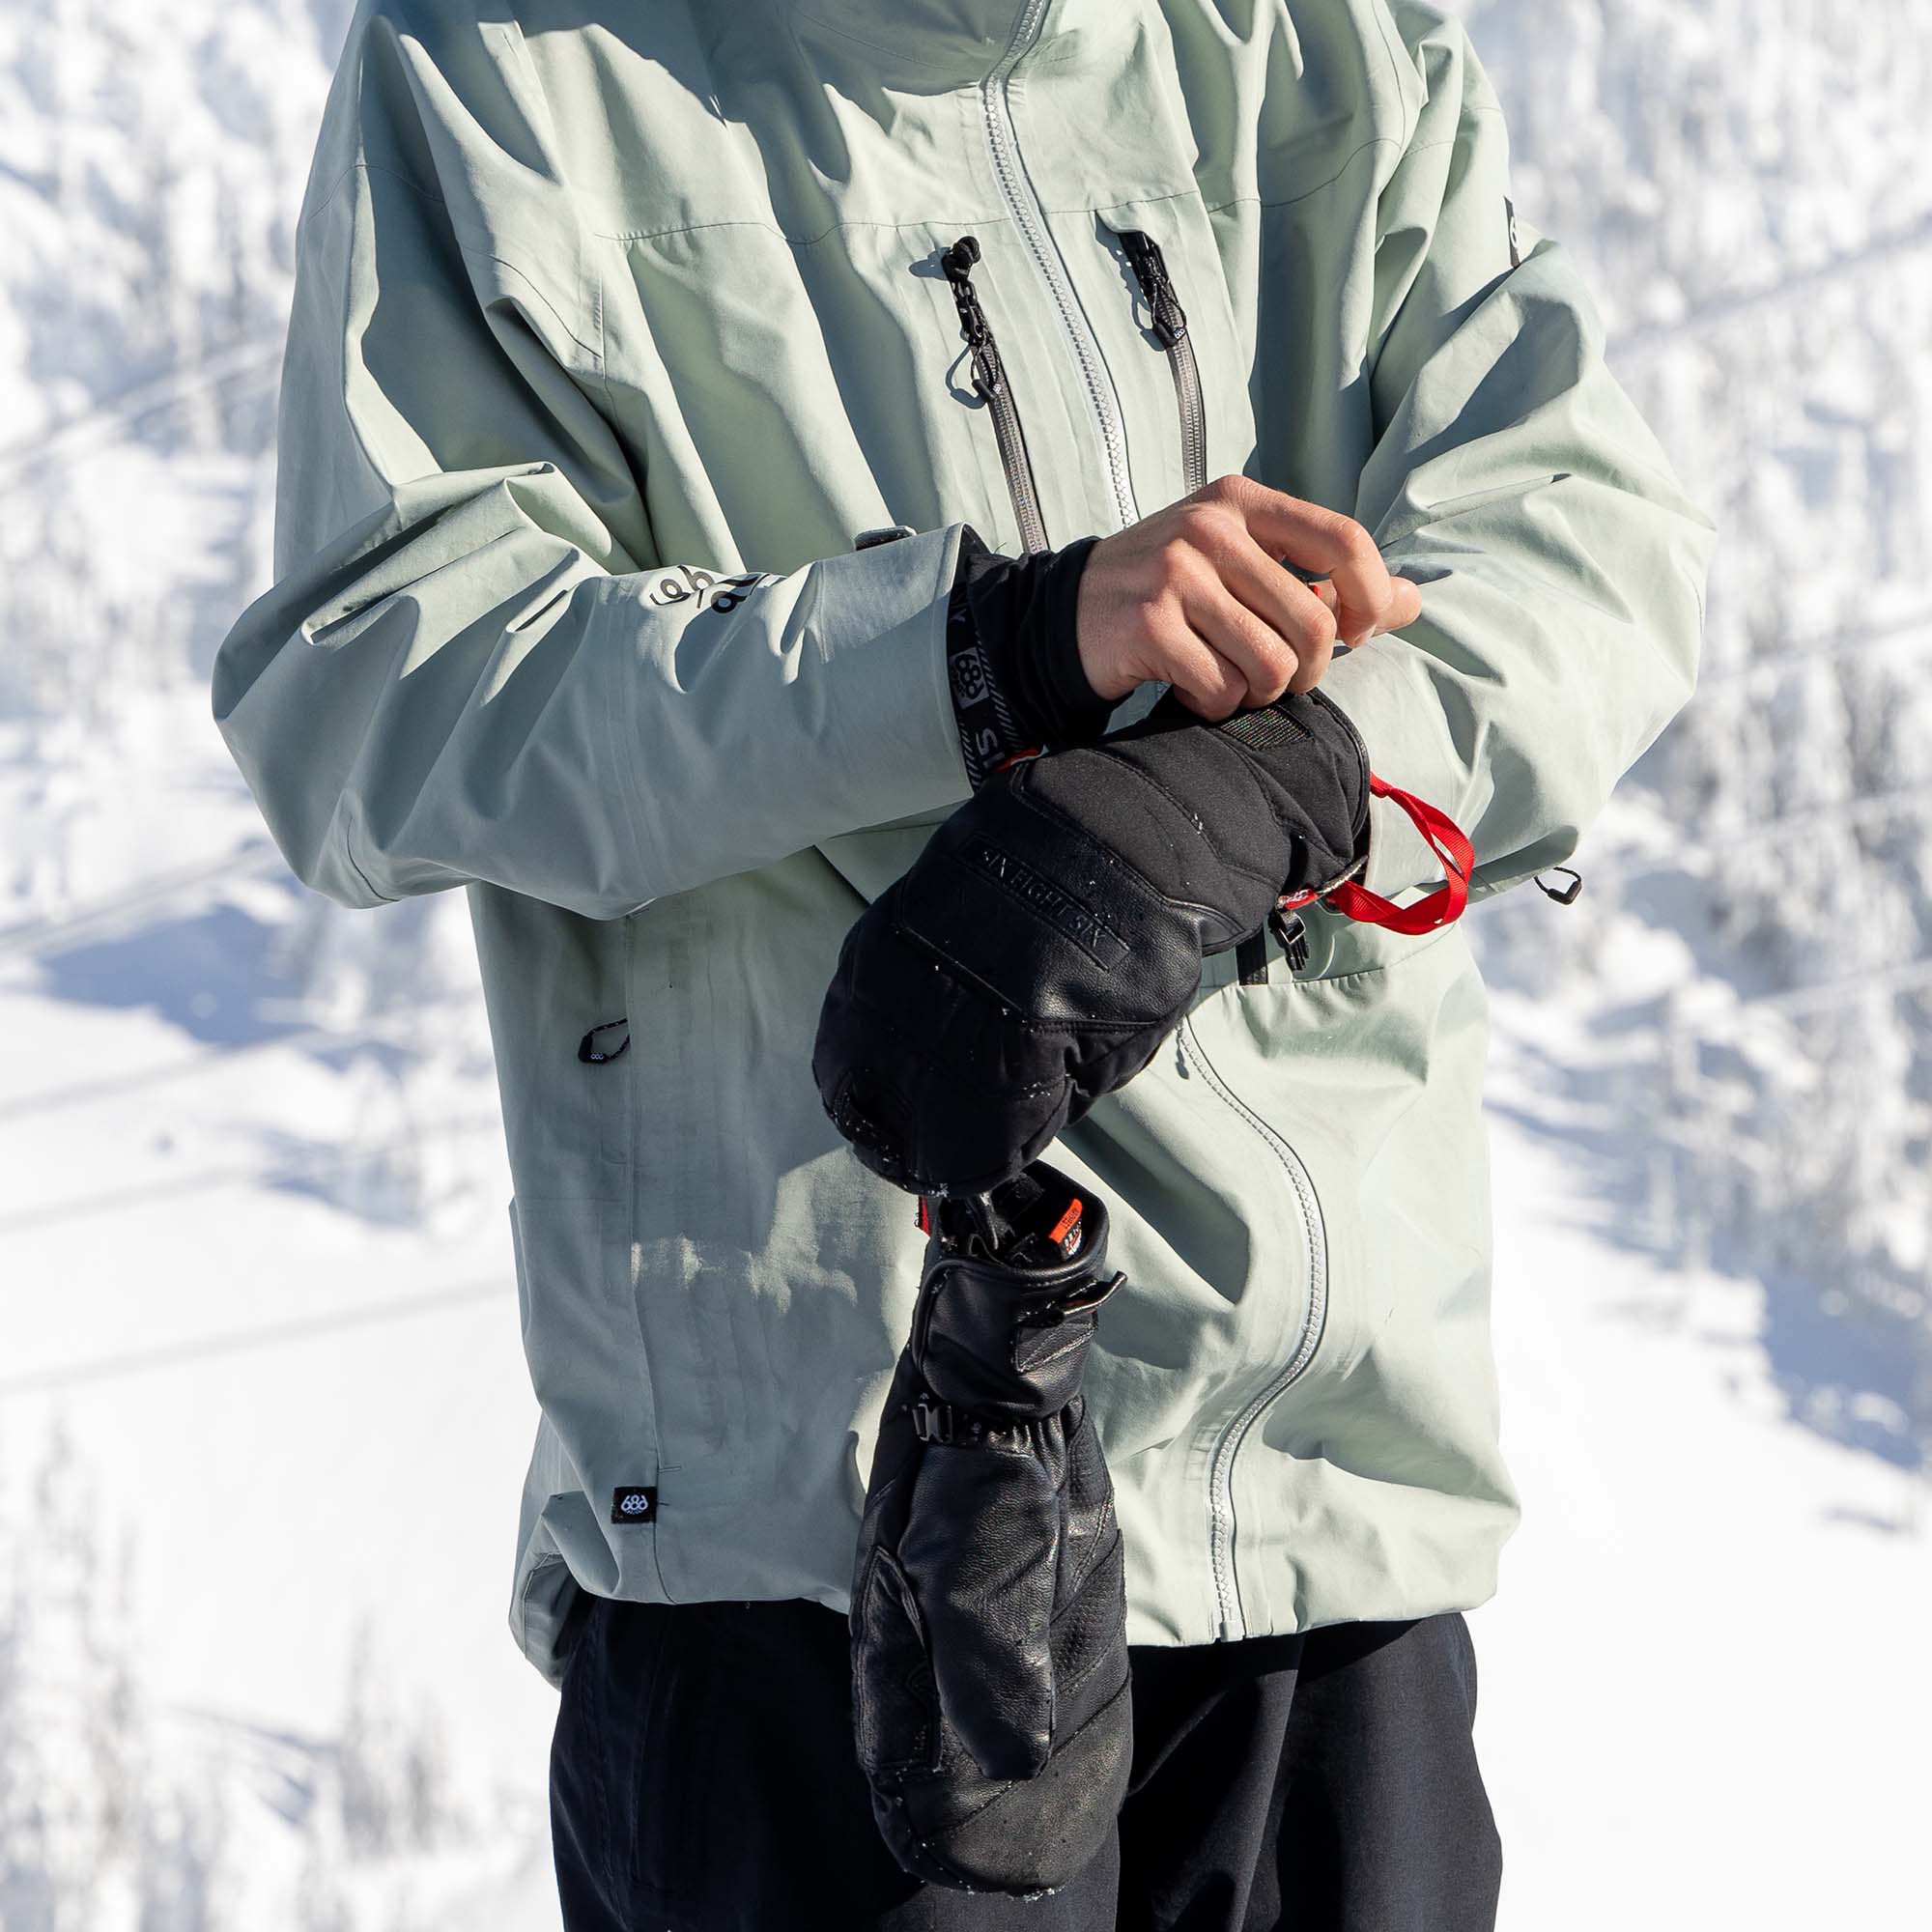 686 GTX Apex Mitt Insulated Snowboard/Ski Gloves